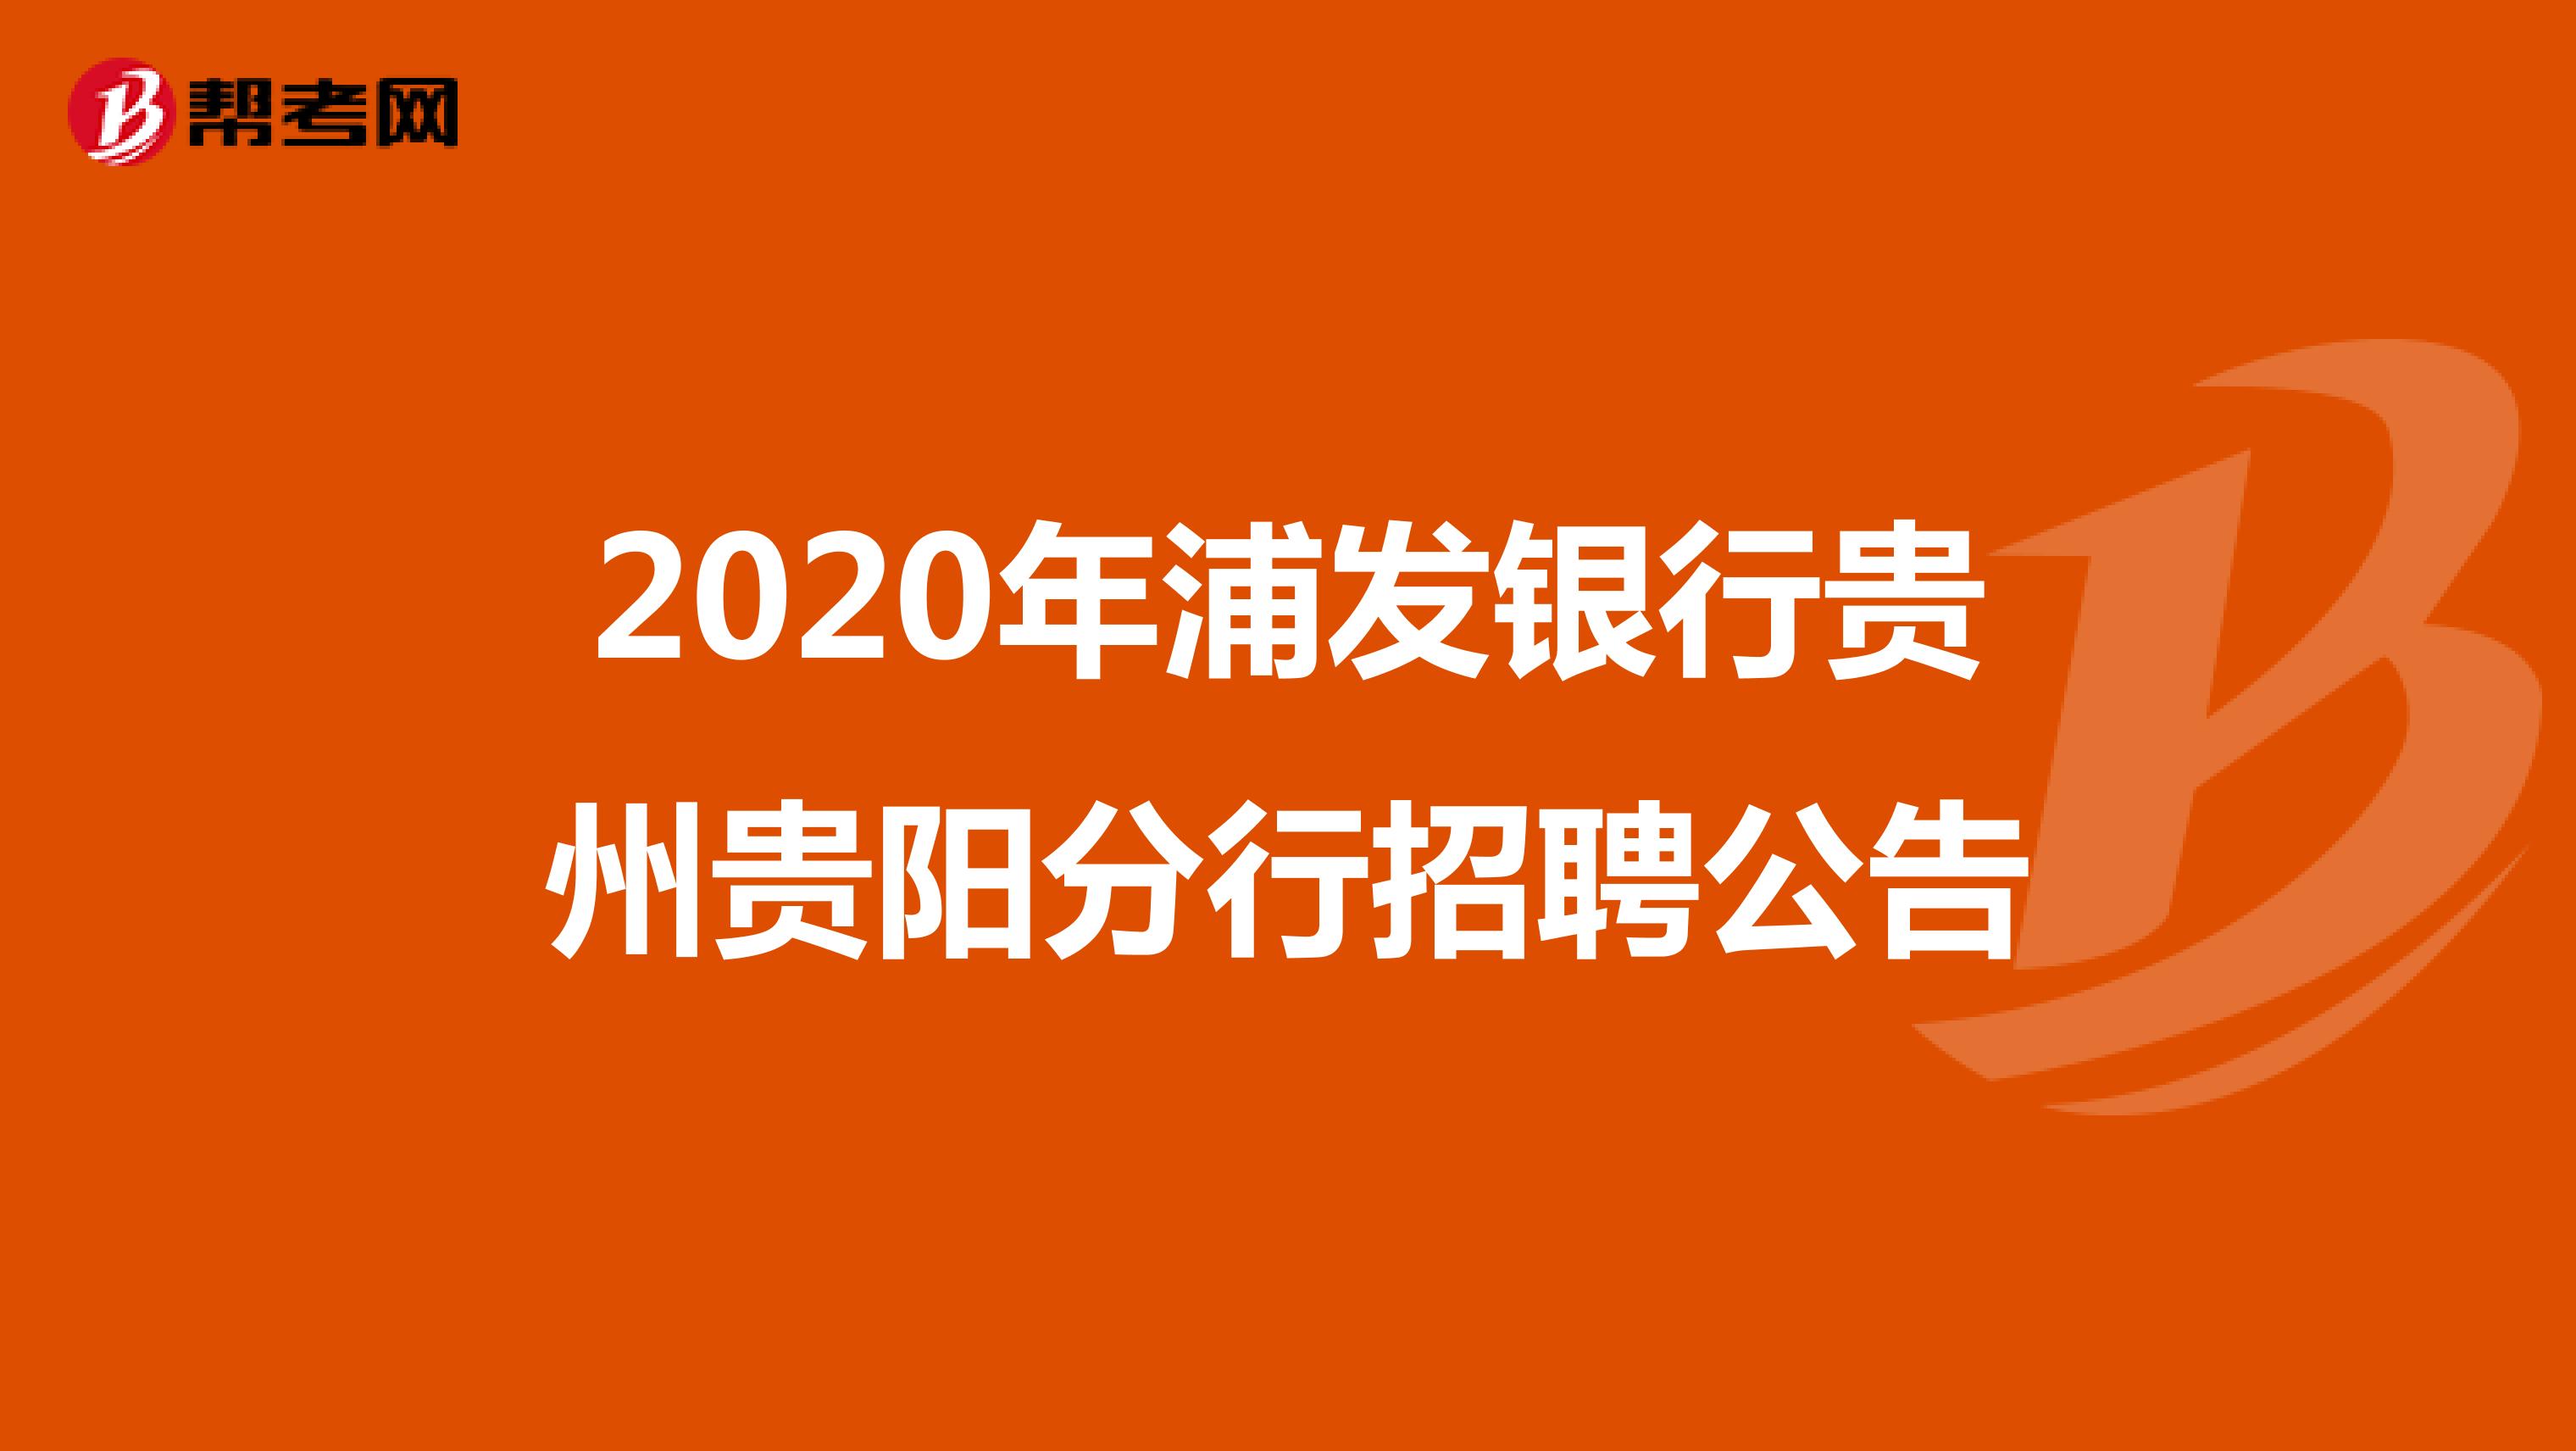 2020年浦发银行贵州贵阳分行招聘公告